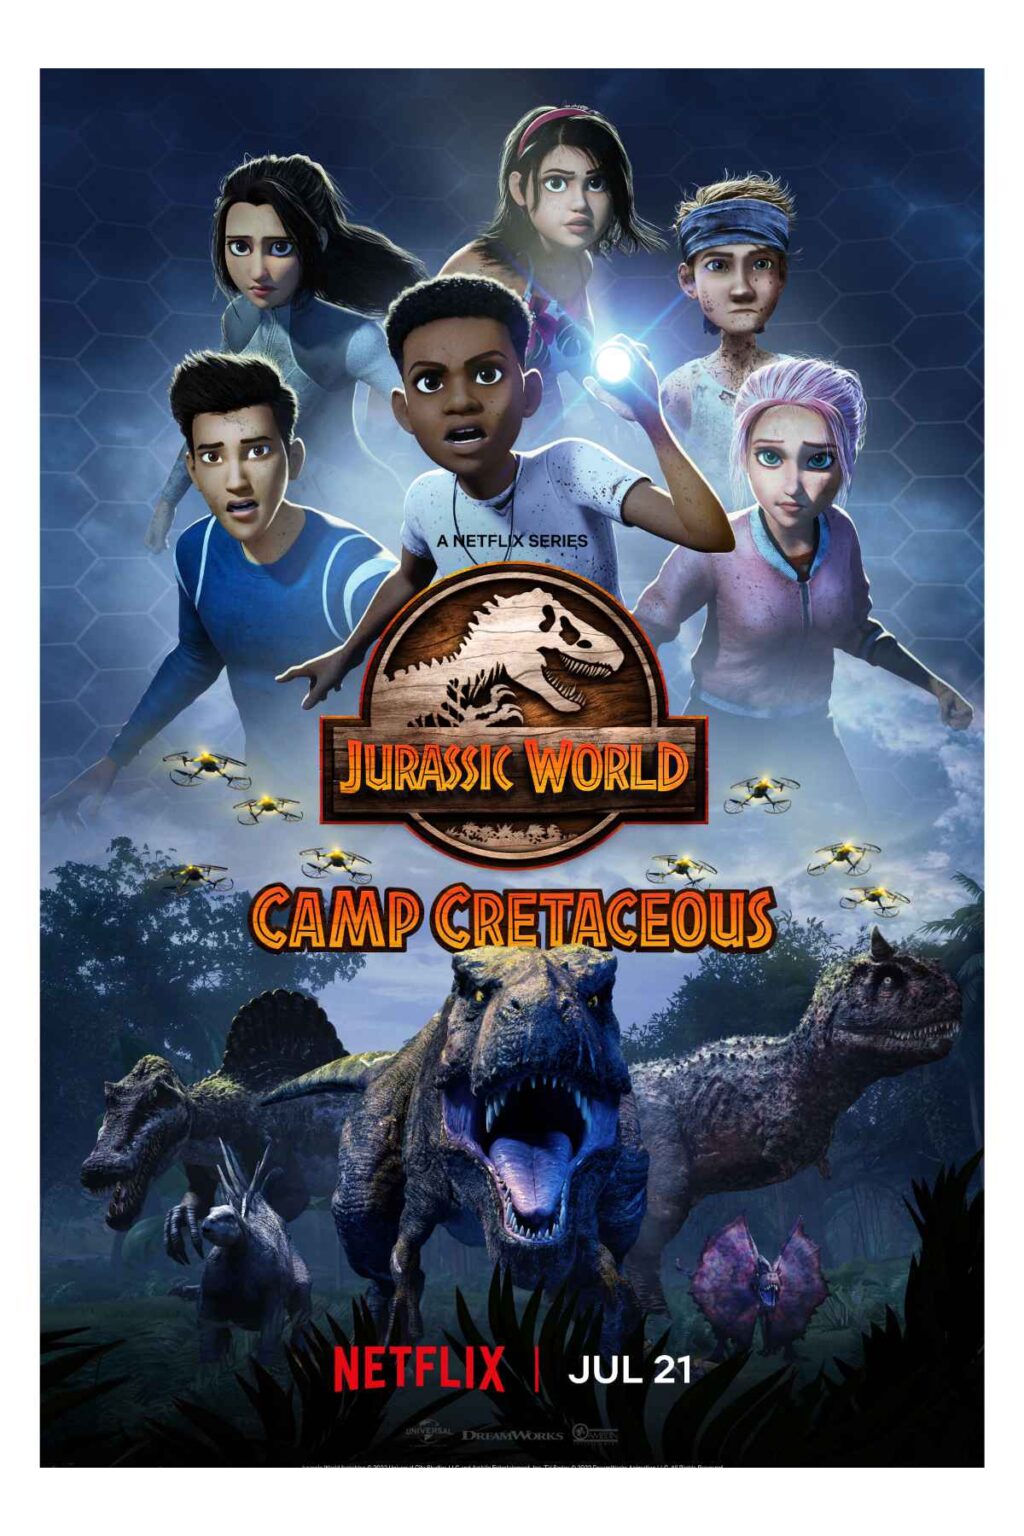 Camp Cretaceous Season 5 Trailer Previews The Final Season